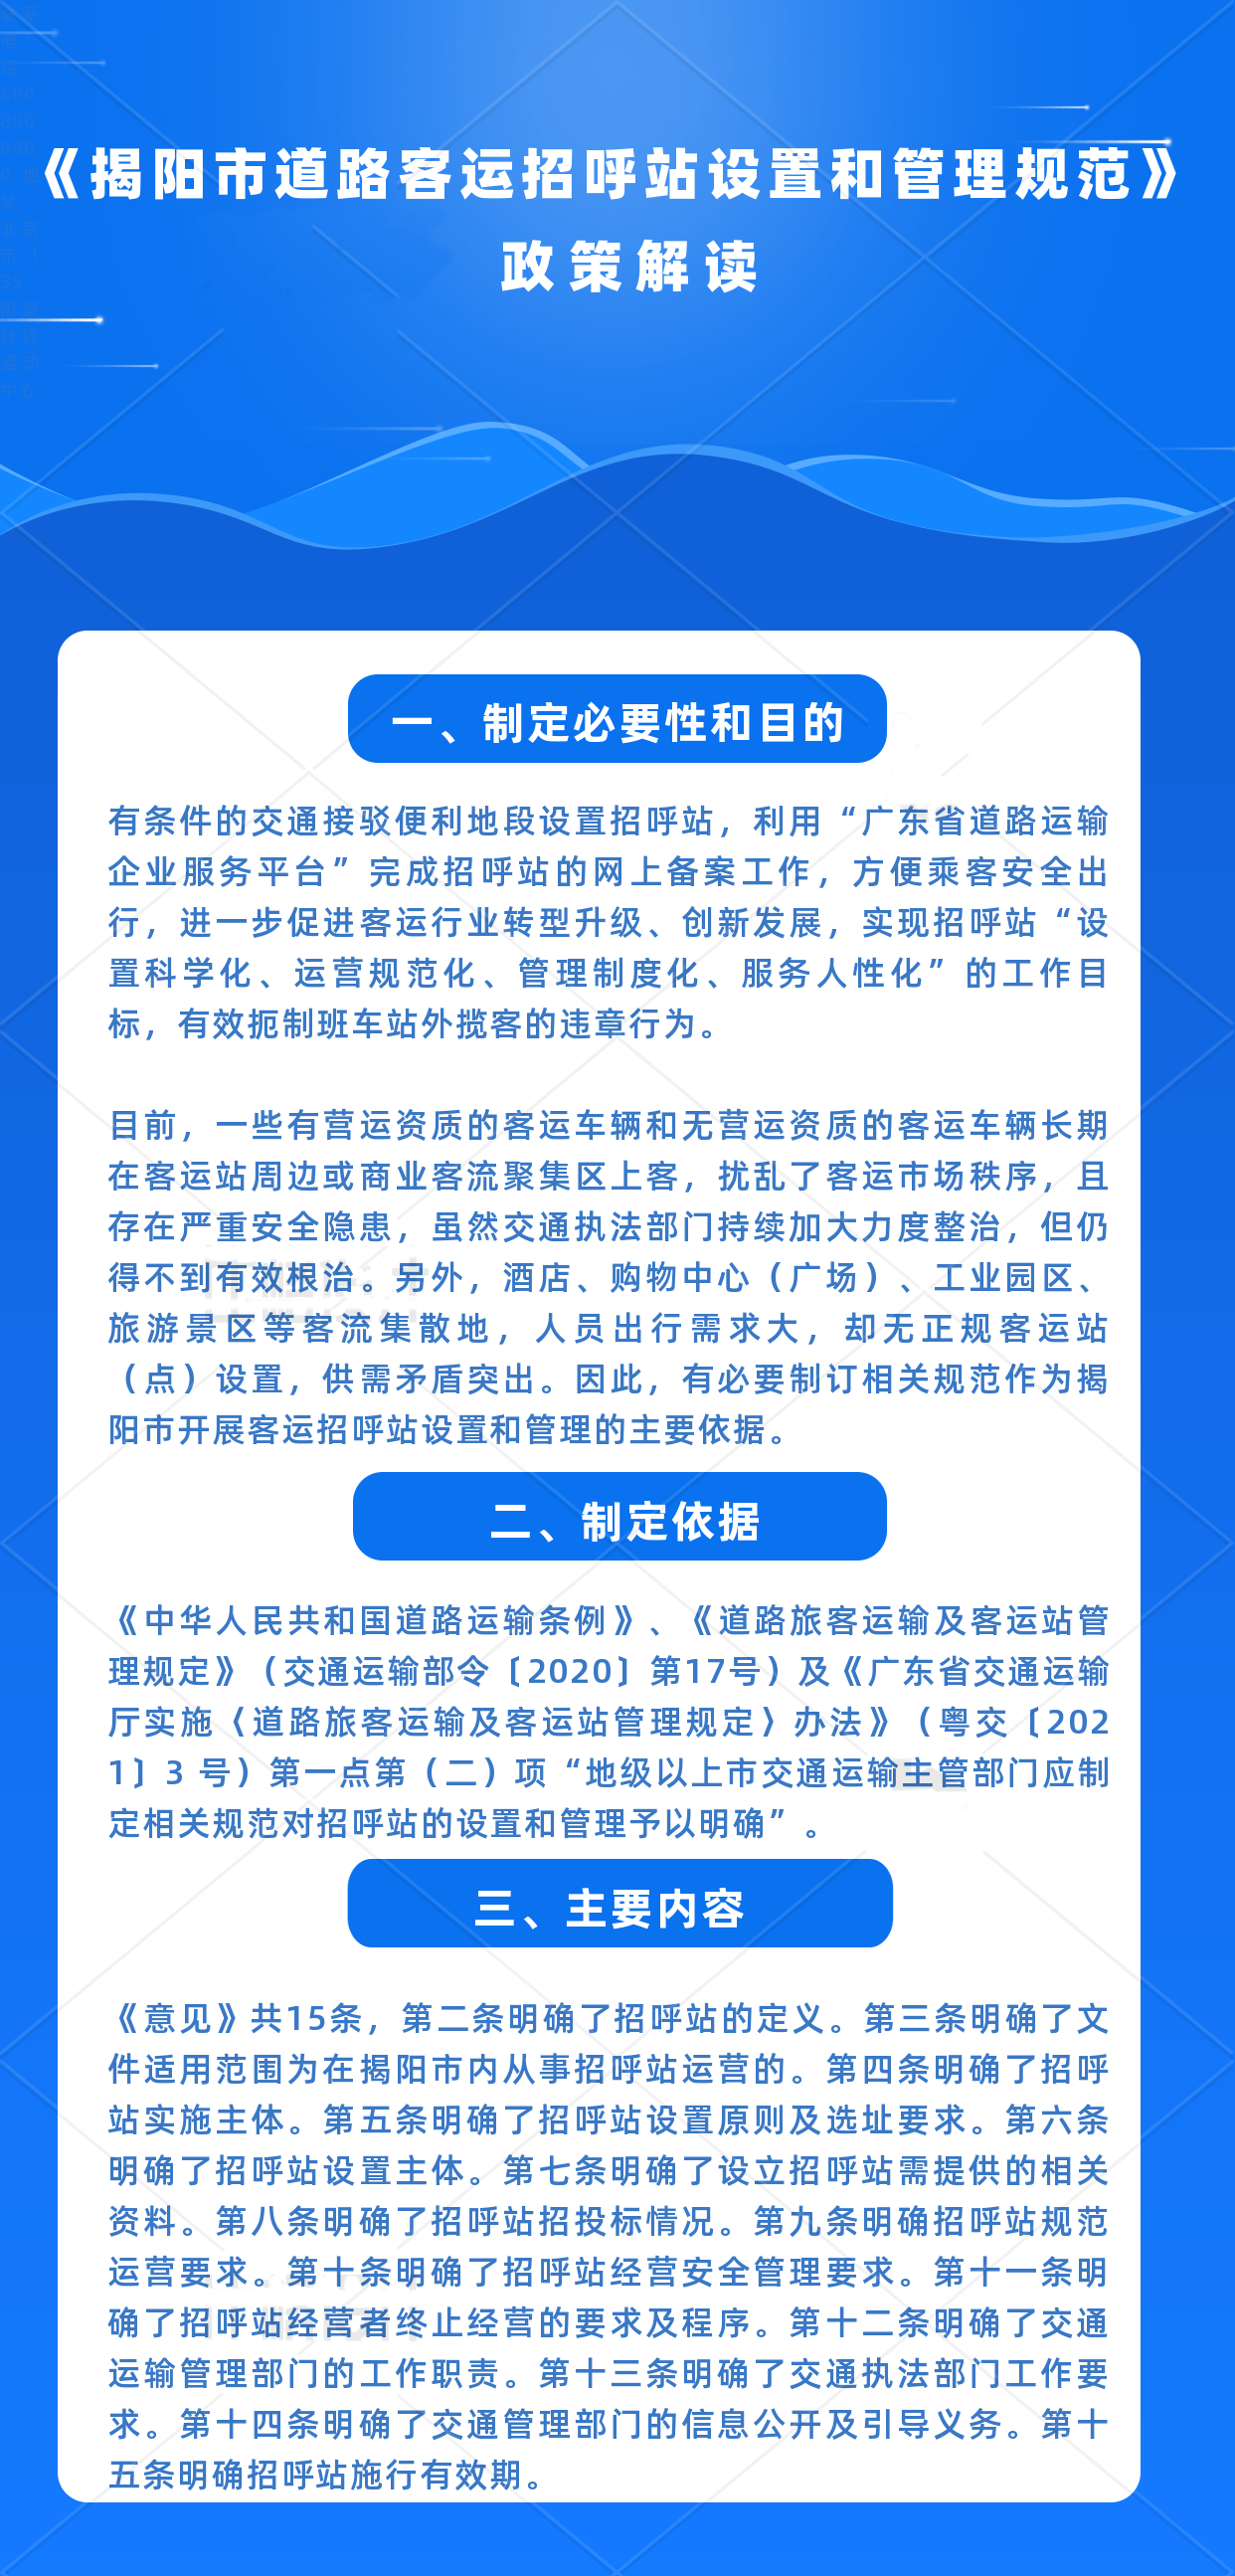 《揭阳市道路客运招呼站设置和管理规范》政策解读.png